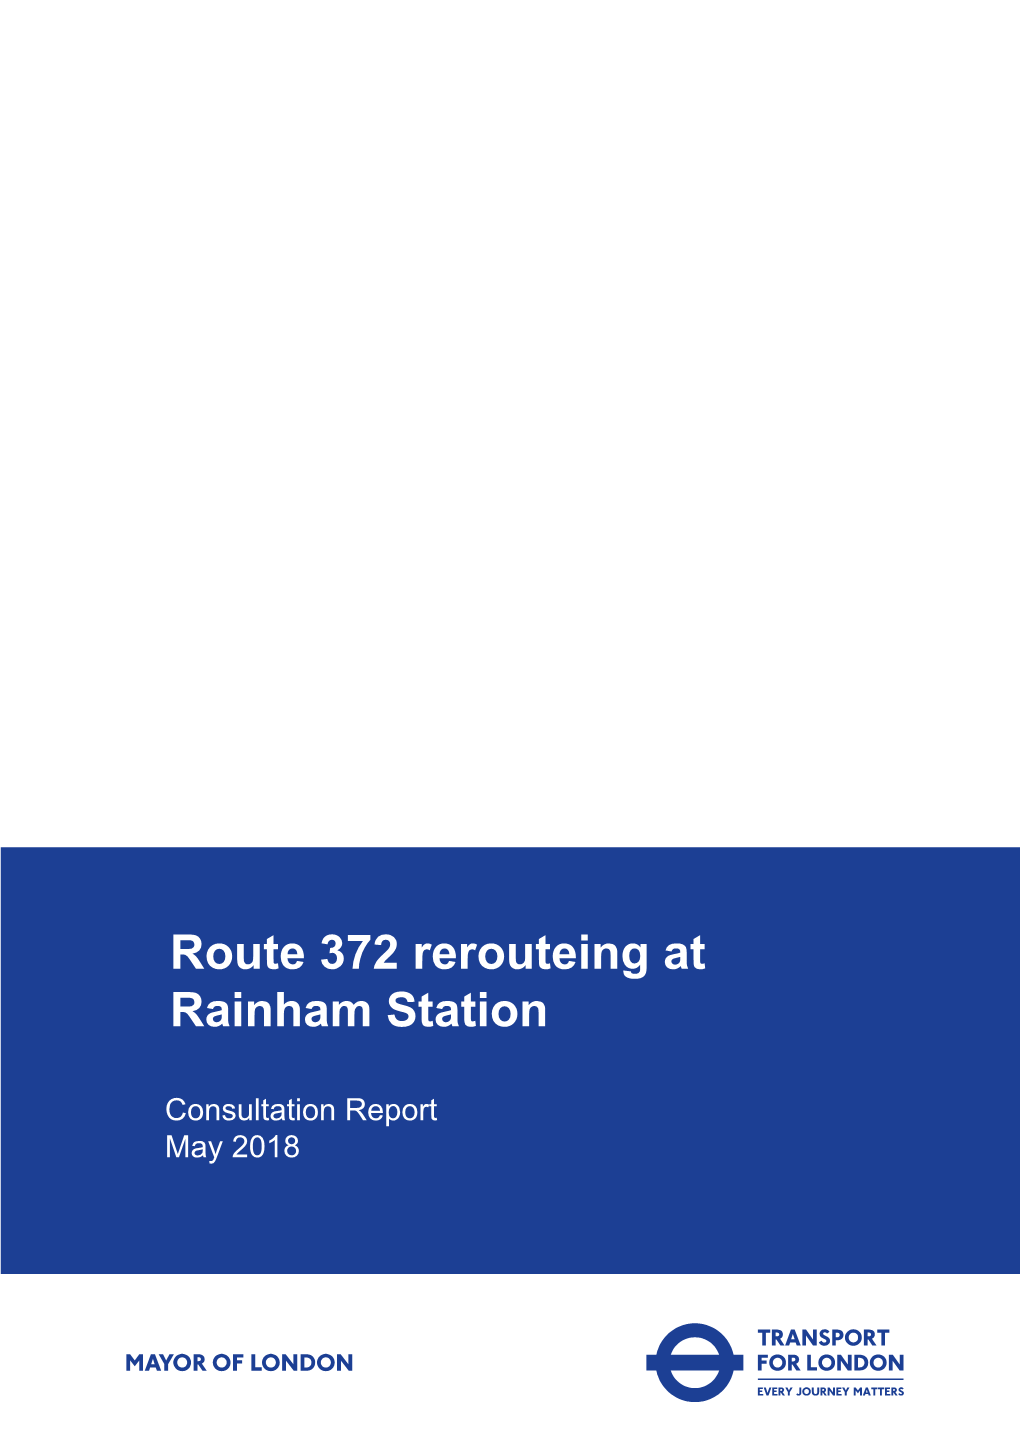 Route 372 Consultation Report